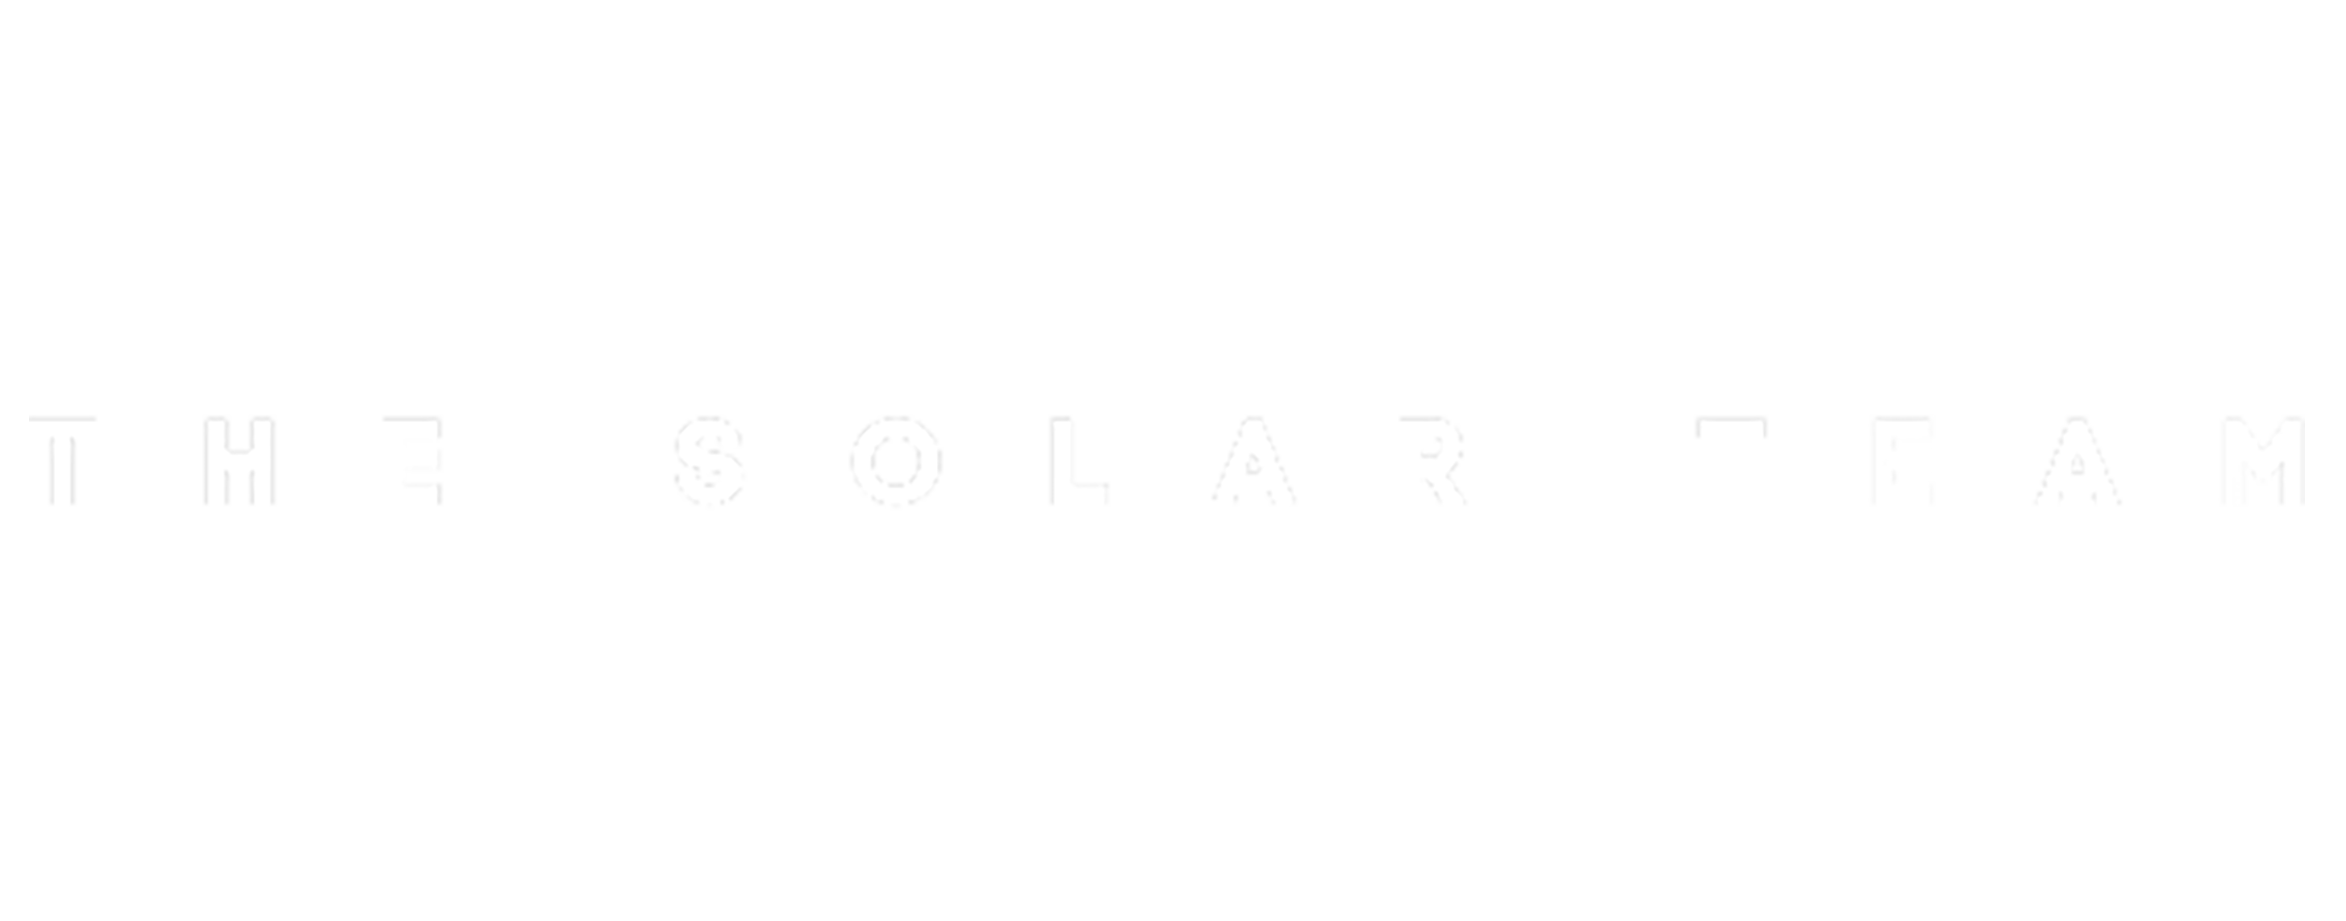 The Solar Team